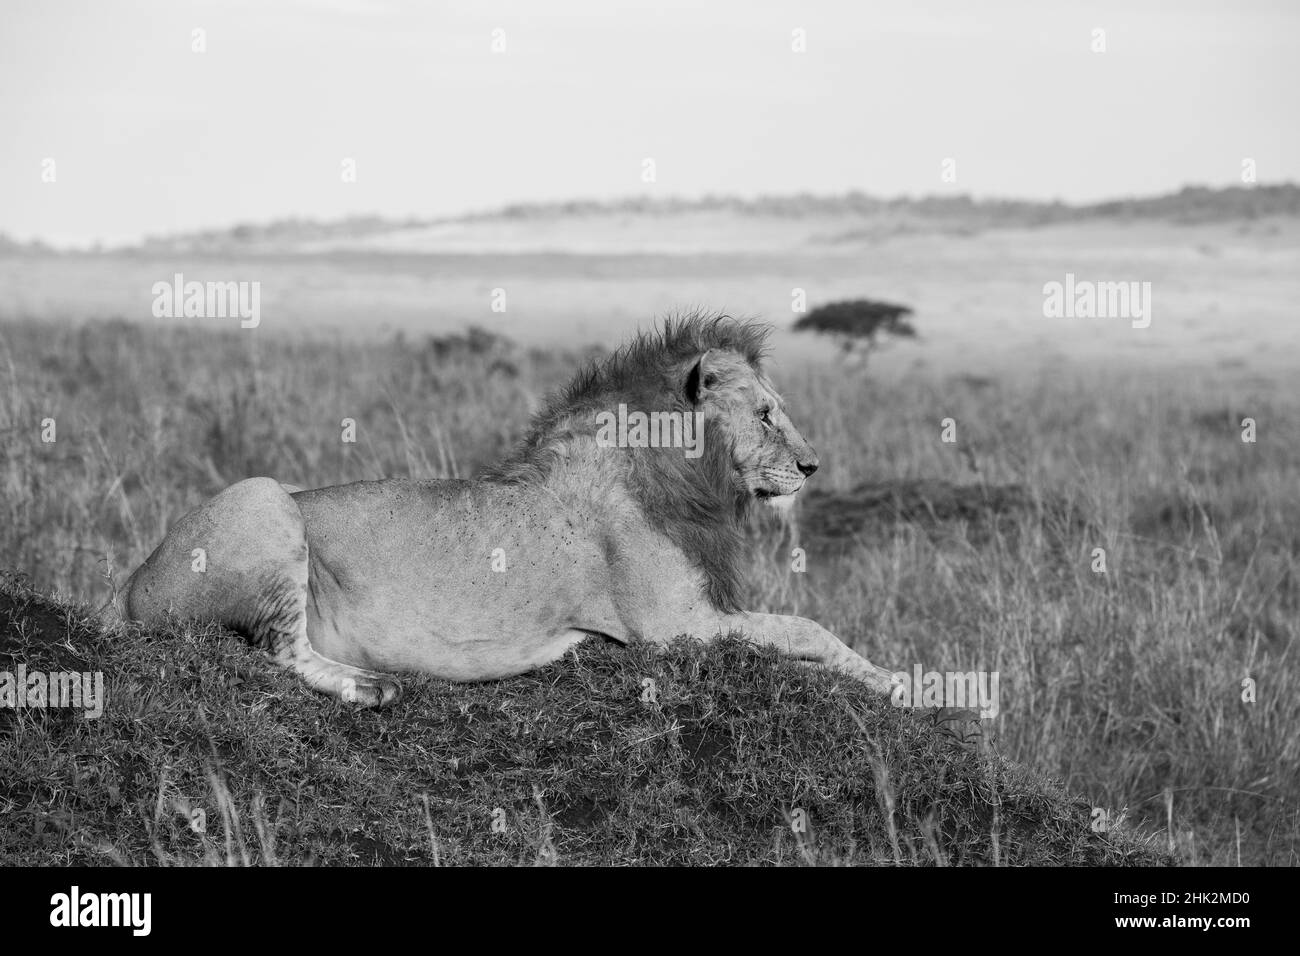 Afrika, Kenia, Serengeti, Maasai Mara. Junger männlicher Löwe im typischen Lebensraum der Serengeti-Ebene. Stockfoto